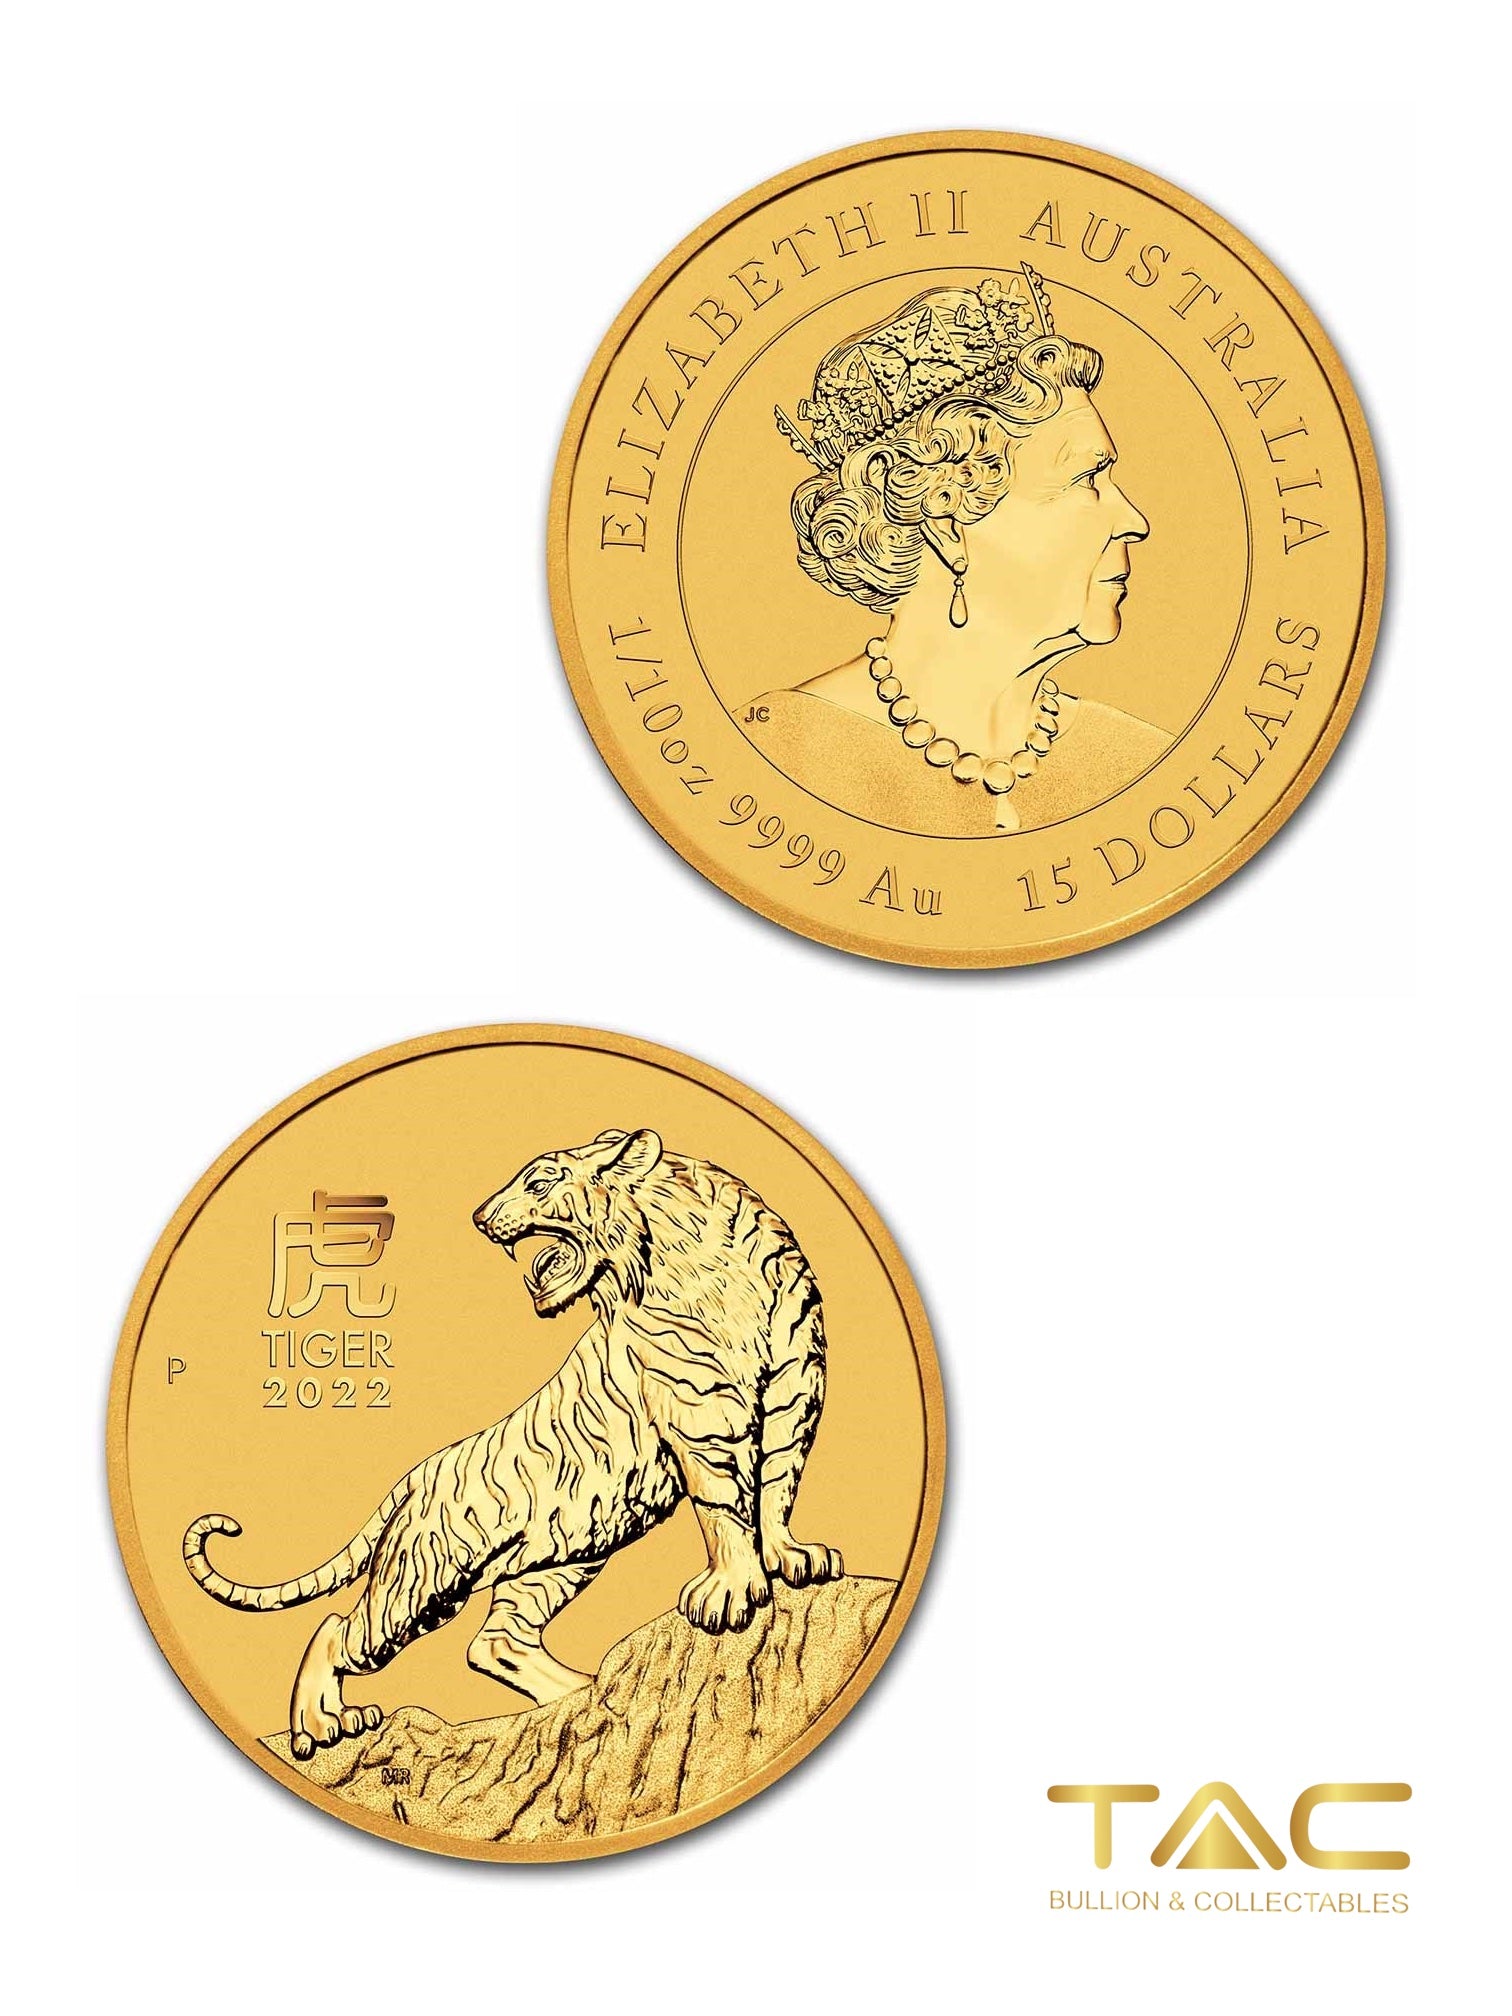 1/10 oz Gold Coin - 2022 Luna Tiger - Perth Mint